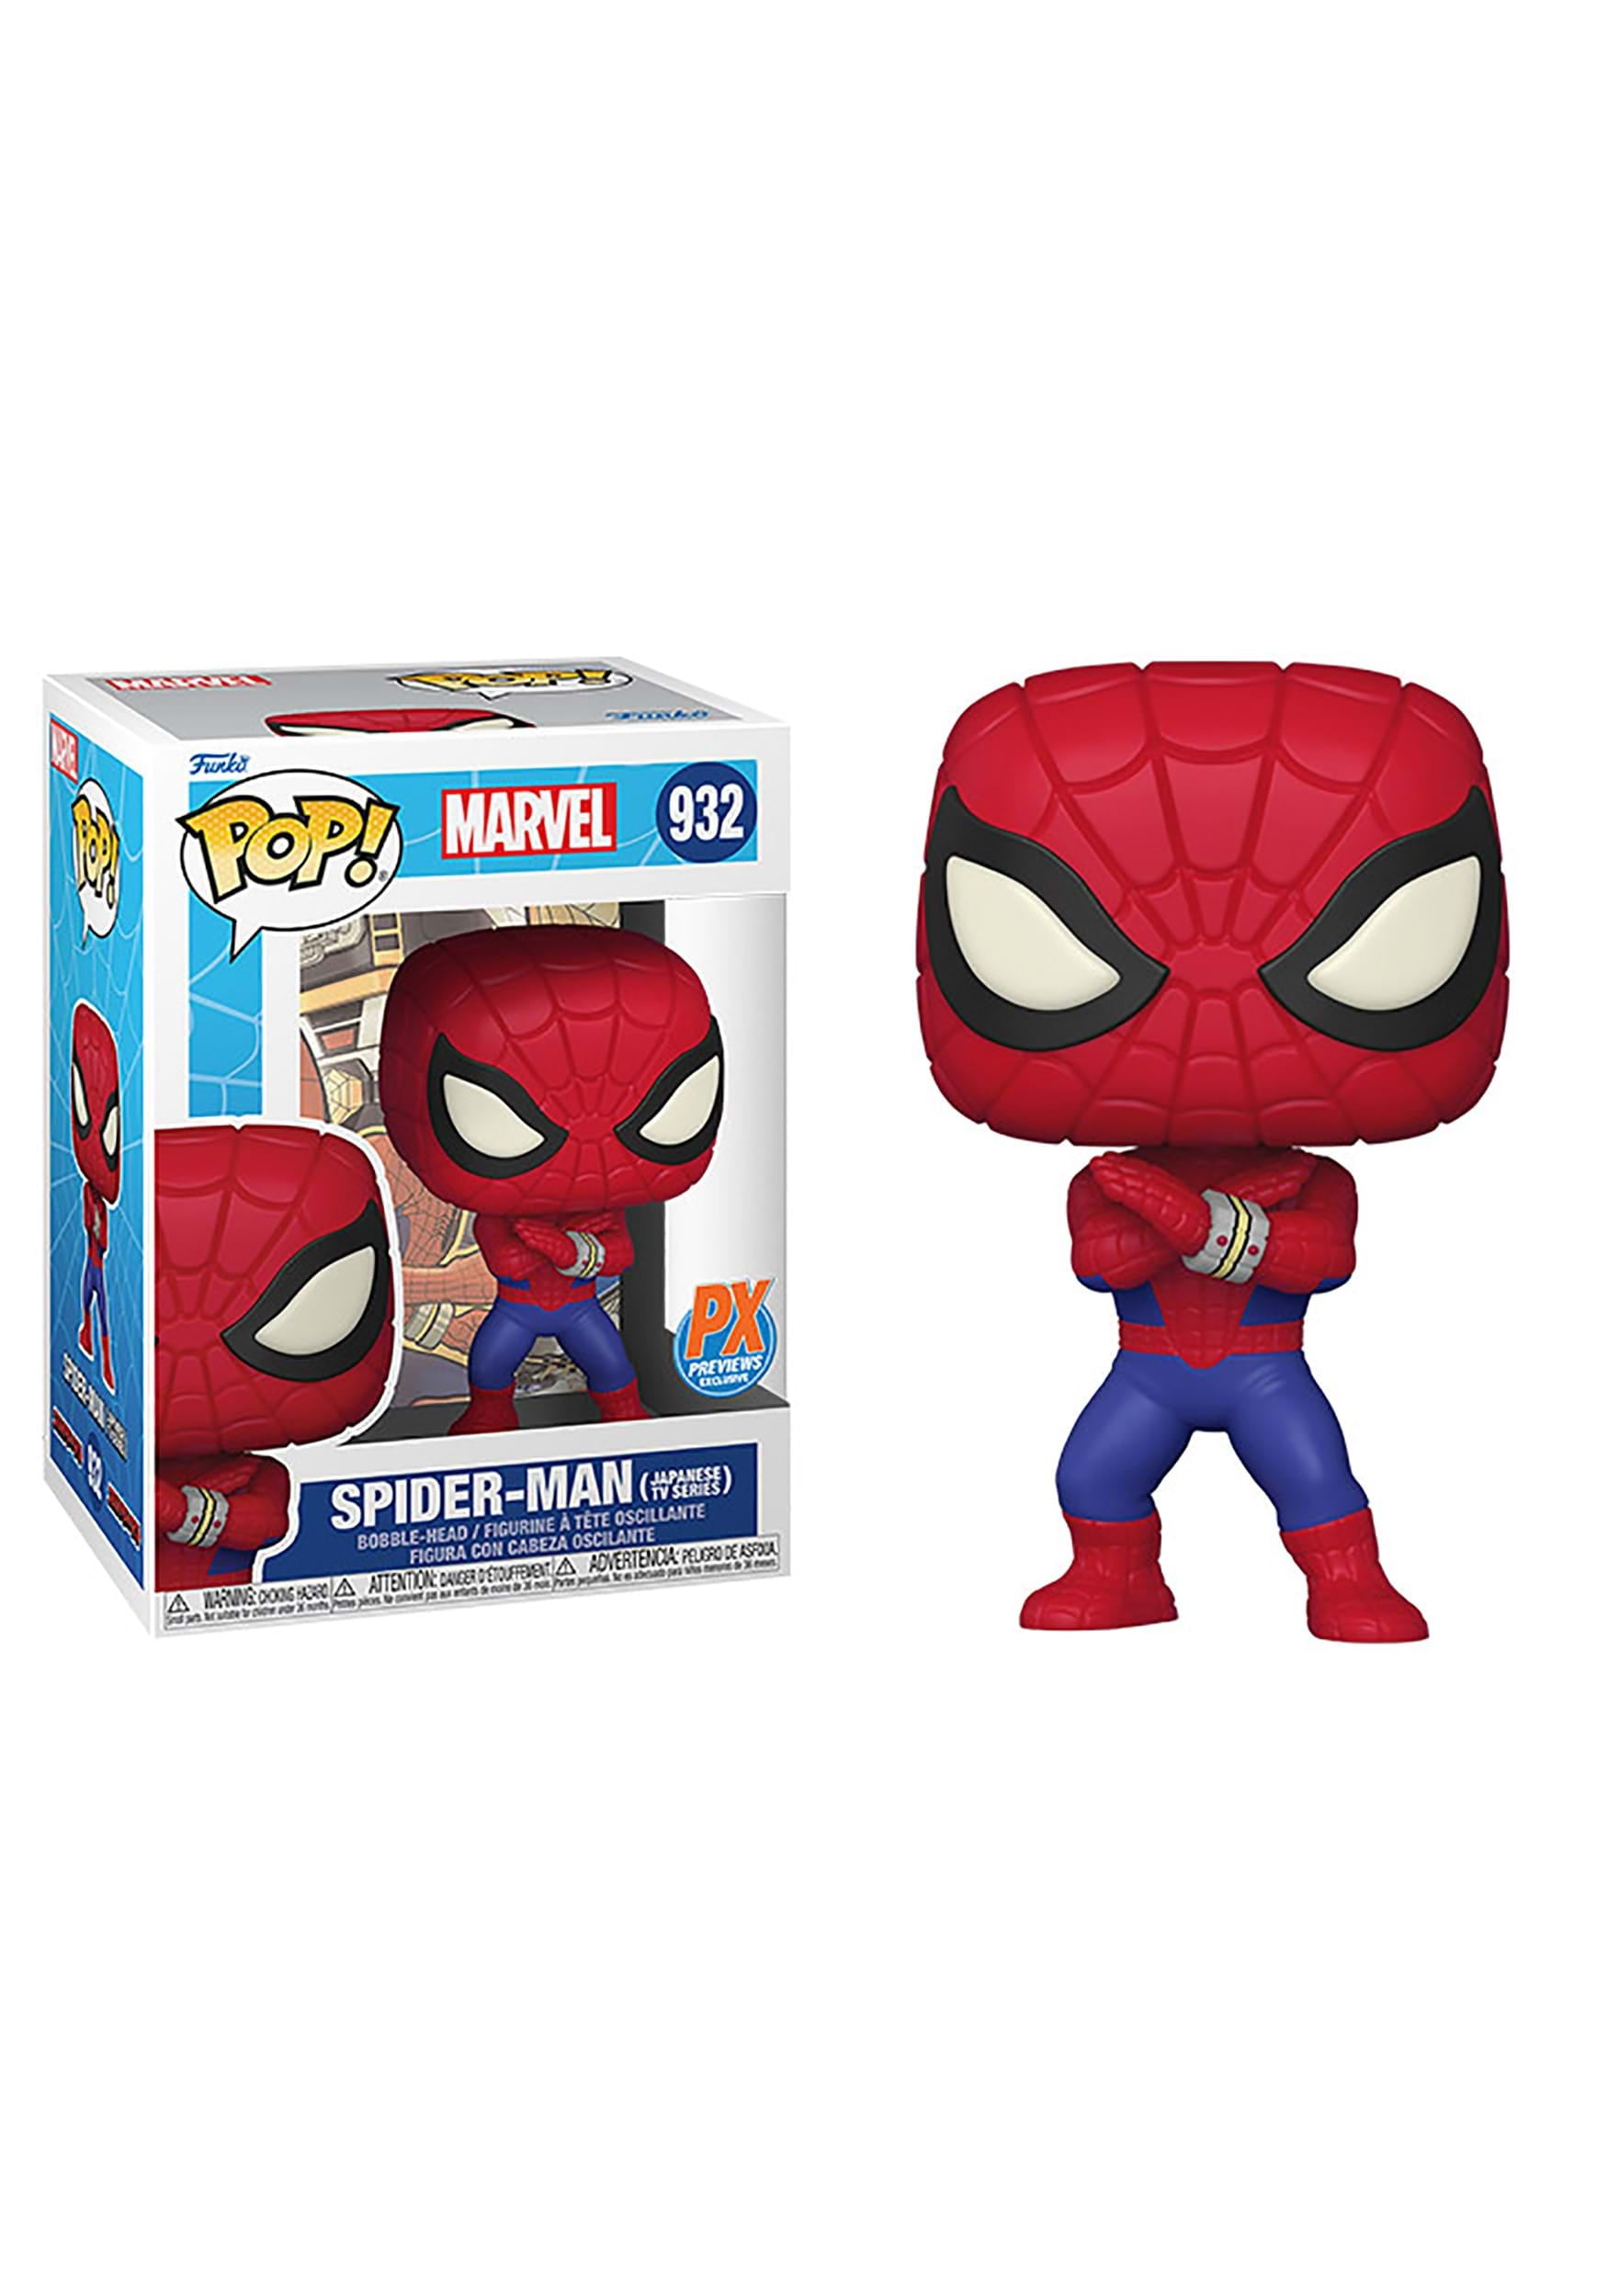 8 Piatti Piatti Spiderman 2 Da Dolce Marvel Exclusive Trade